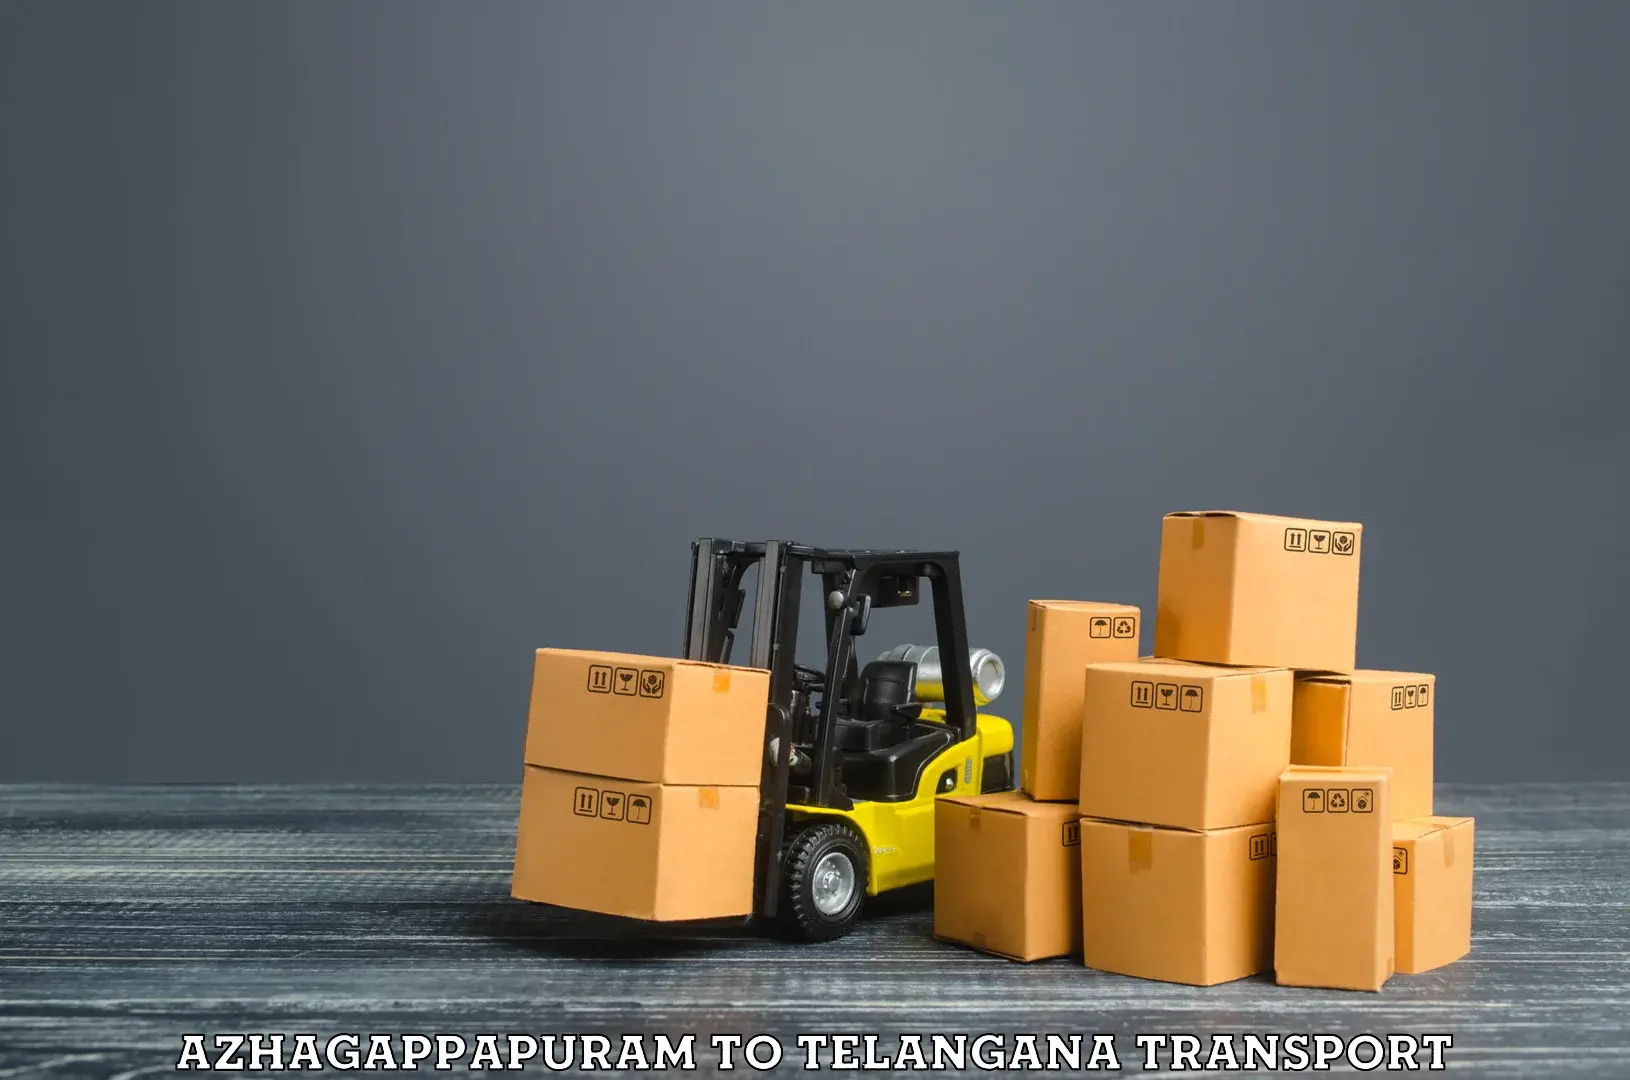 Goods delivery service Azhagappapuram to Jainoor